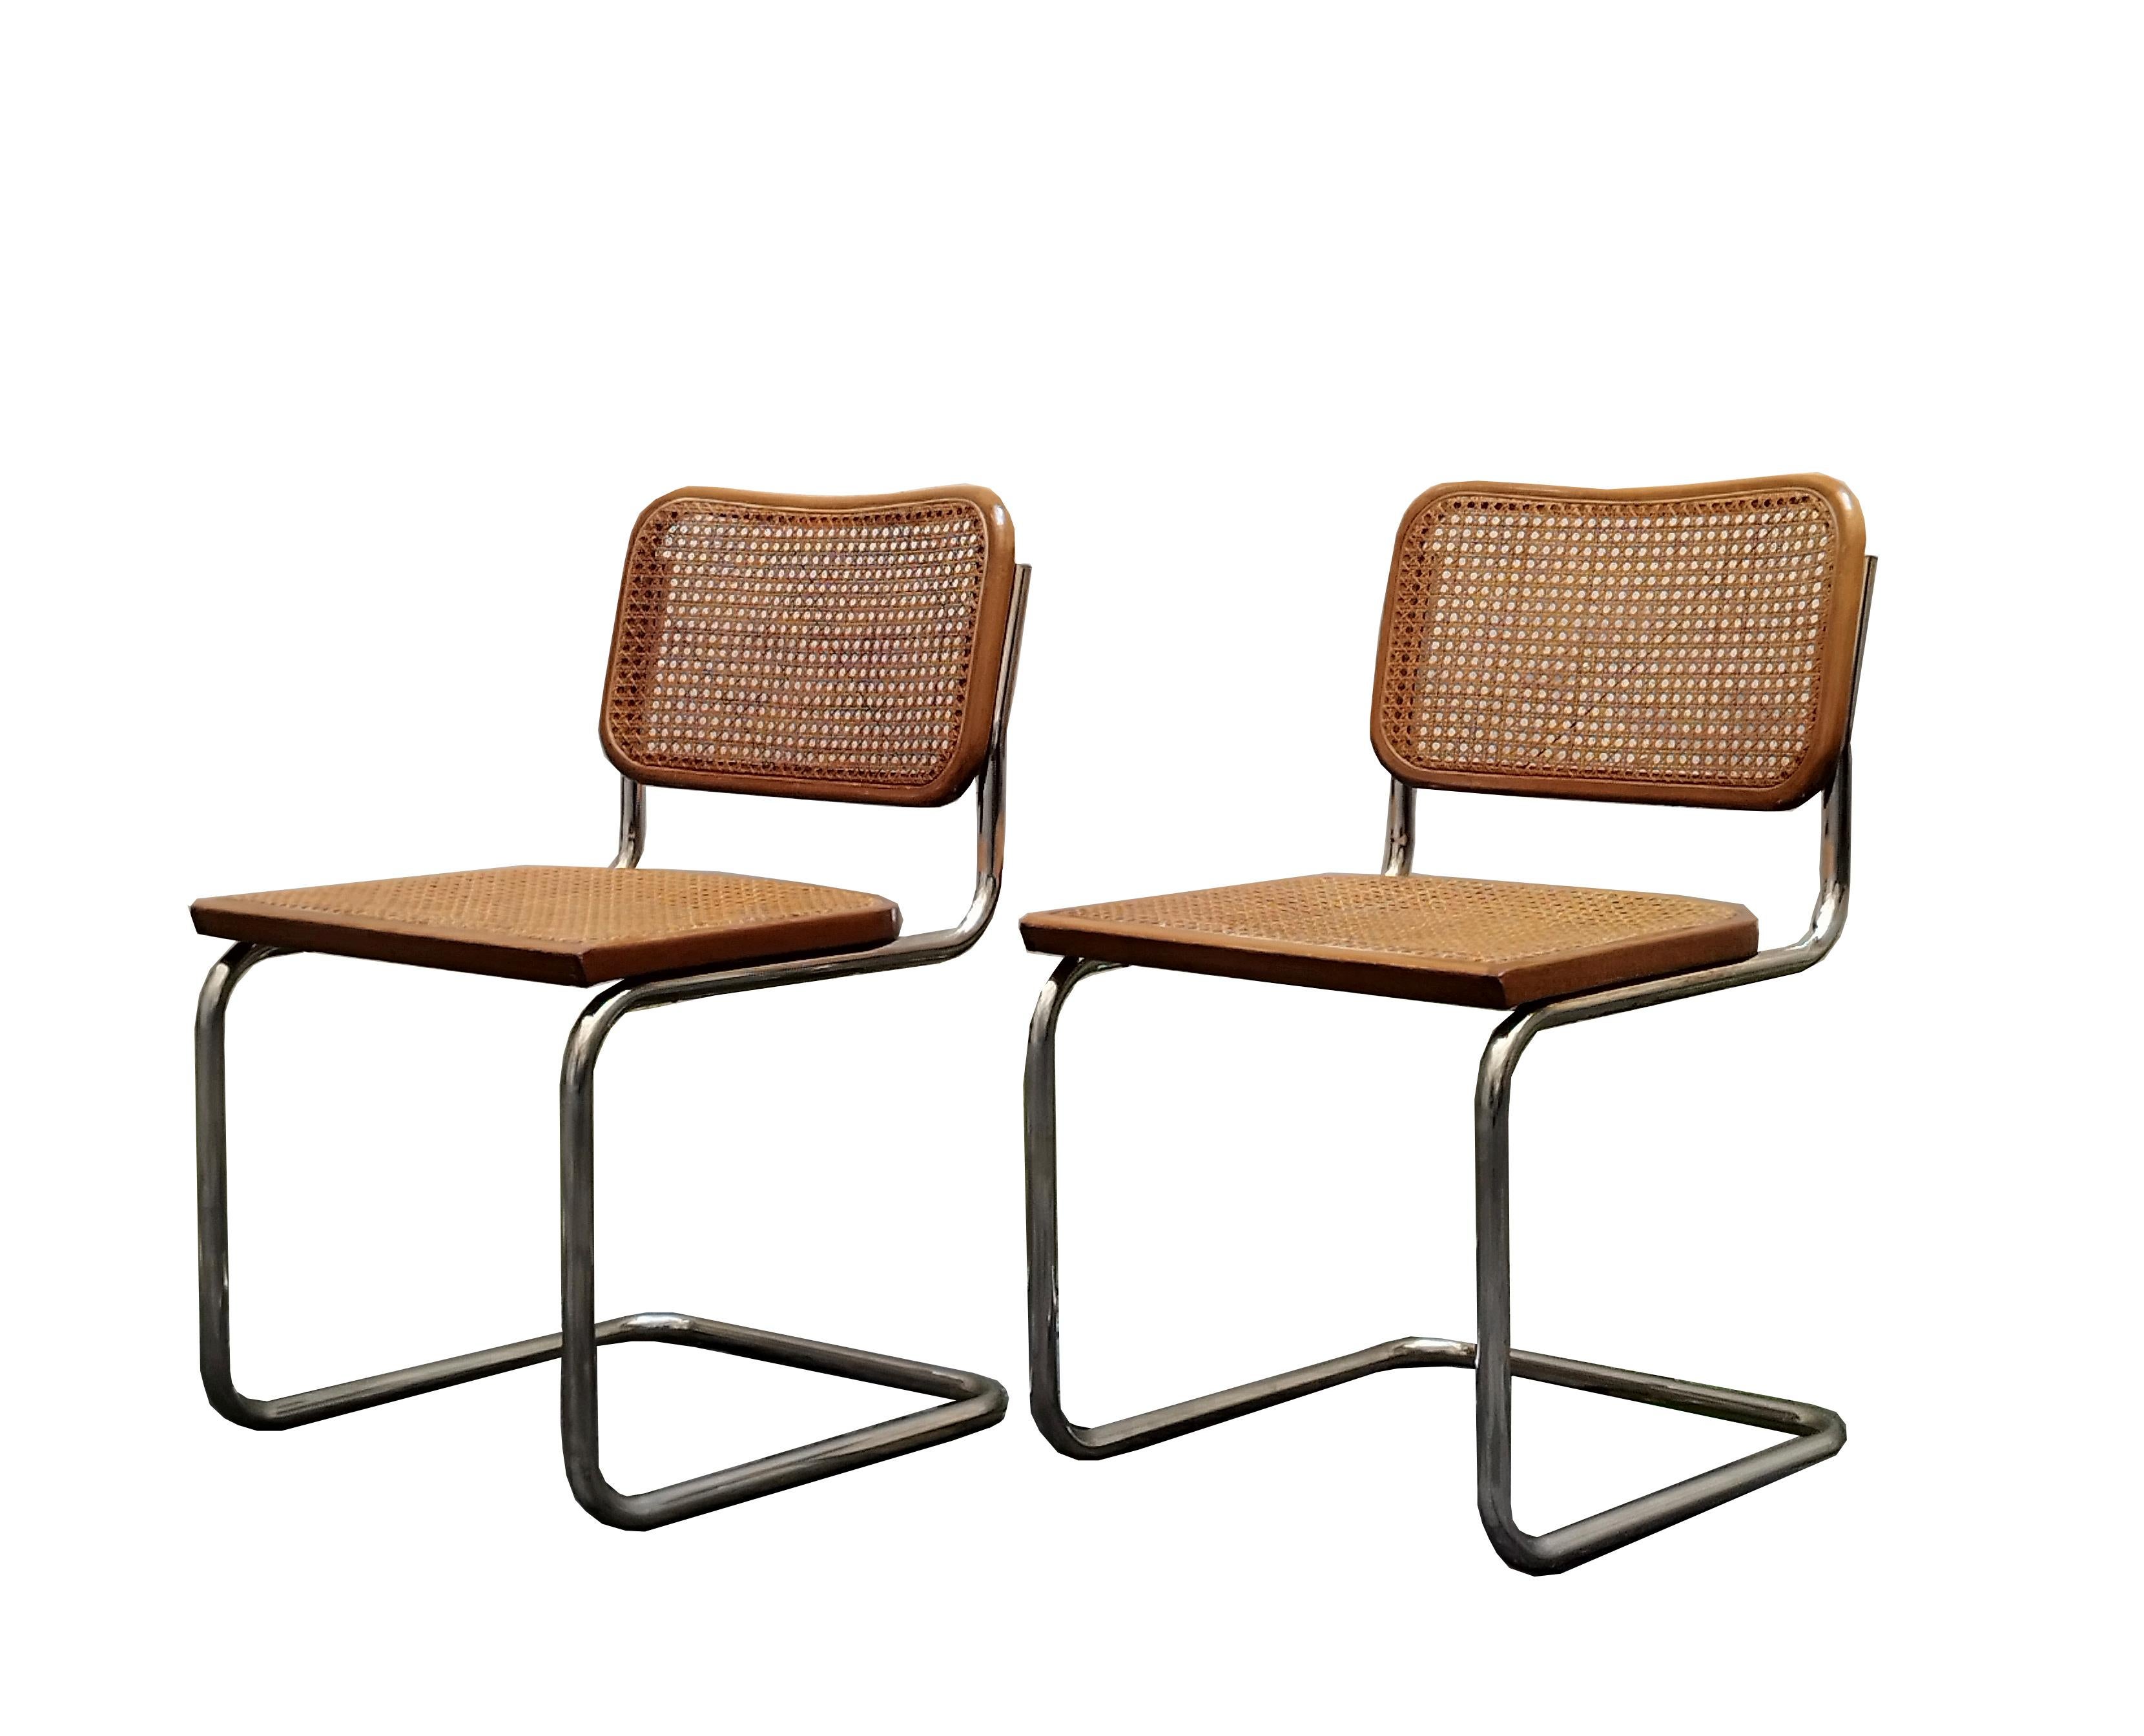 Chaise Cesca conçue par Marcel Breuer. Marcel Breuer a conçu la première chaise en acier tubulaire en 1925, en s'inspirant du cadre tubulaire d'une bicyclette. Sa chaise révolutionnaire, appelée Beele en l'honneur de sa fille Francesca, allie la